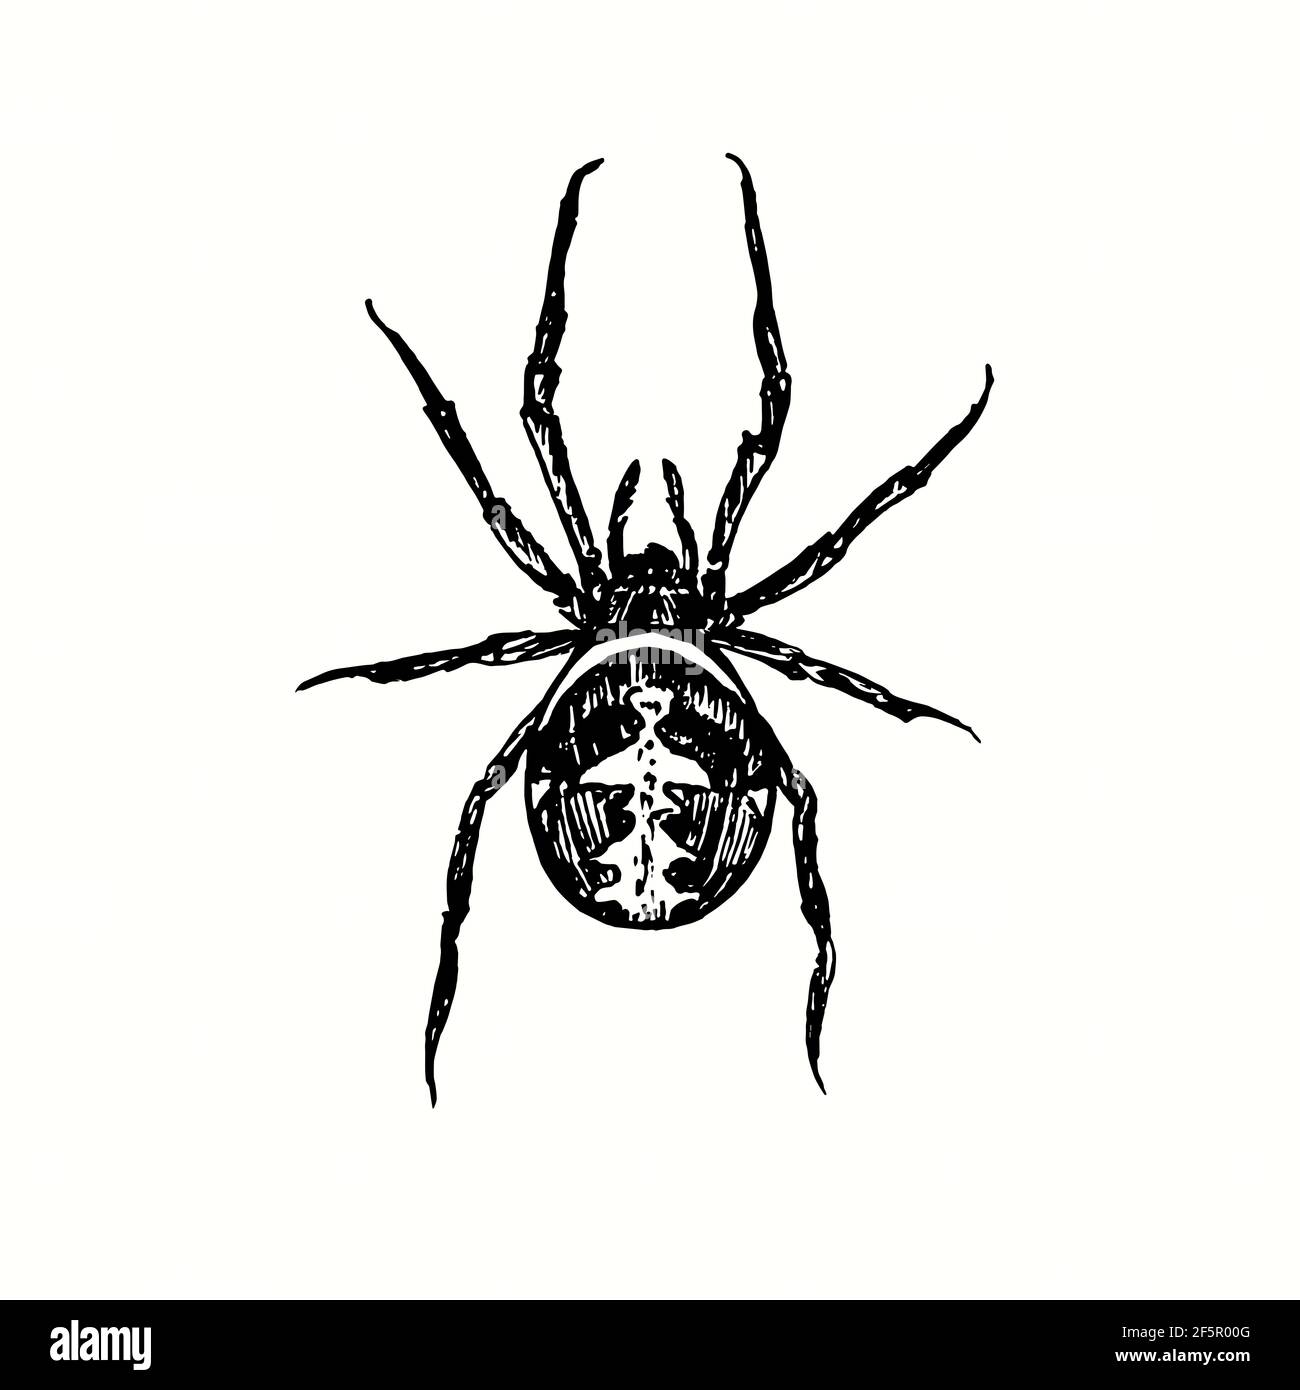 Die rudenspinne (Latrodectus hasselti, australische schwarze Witwe). Tusche schwarz-weiße Doodle Zeichnung im Holzschnitt-Stil. Stockfoto